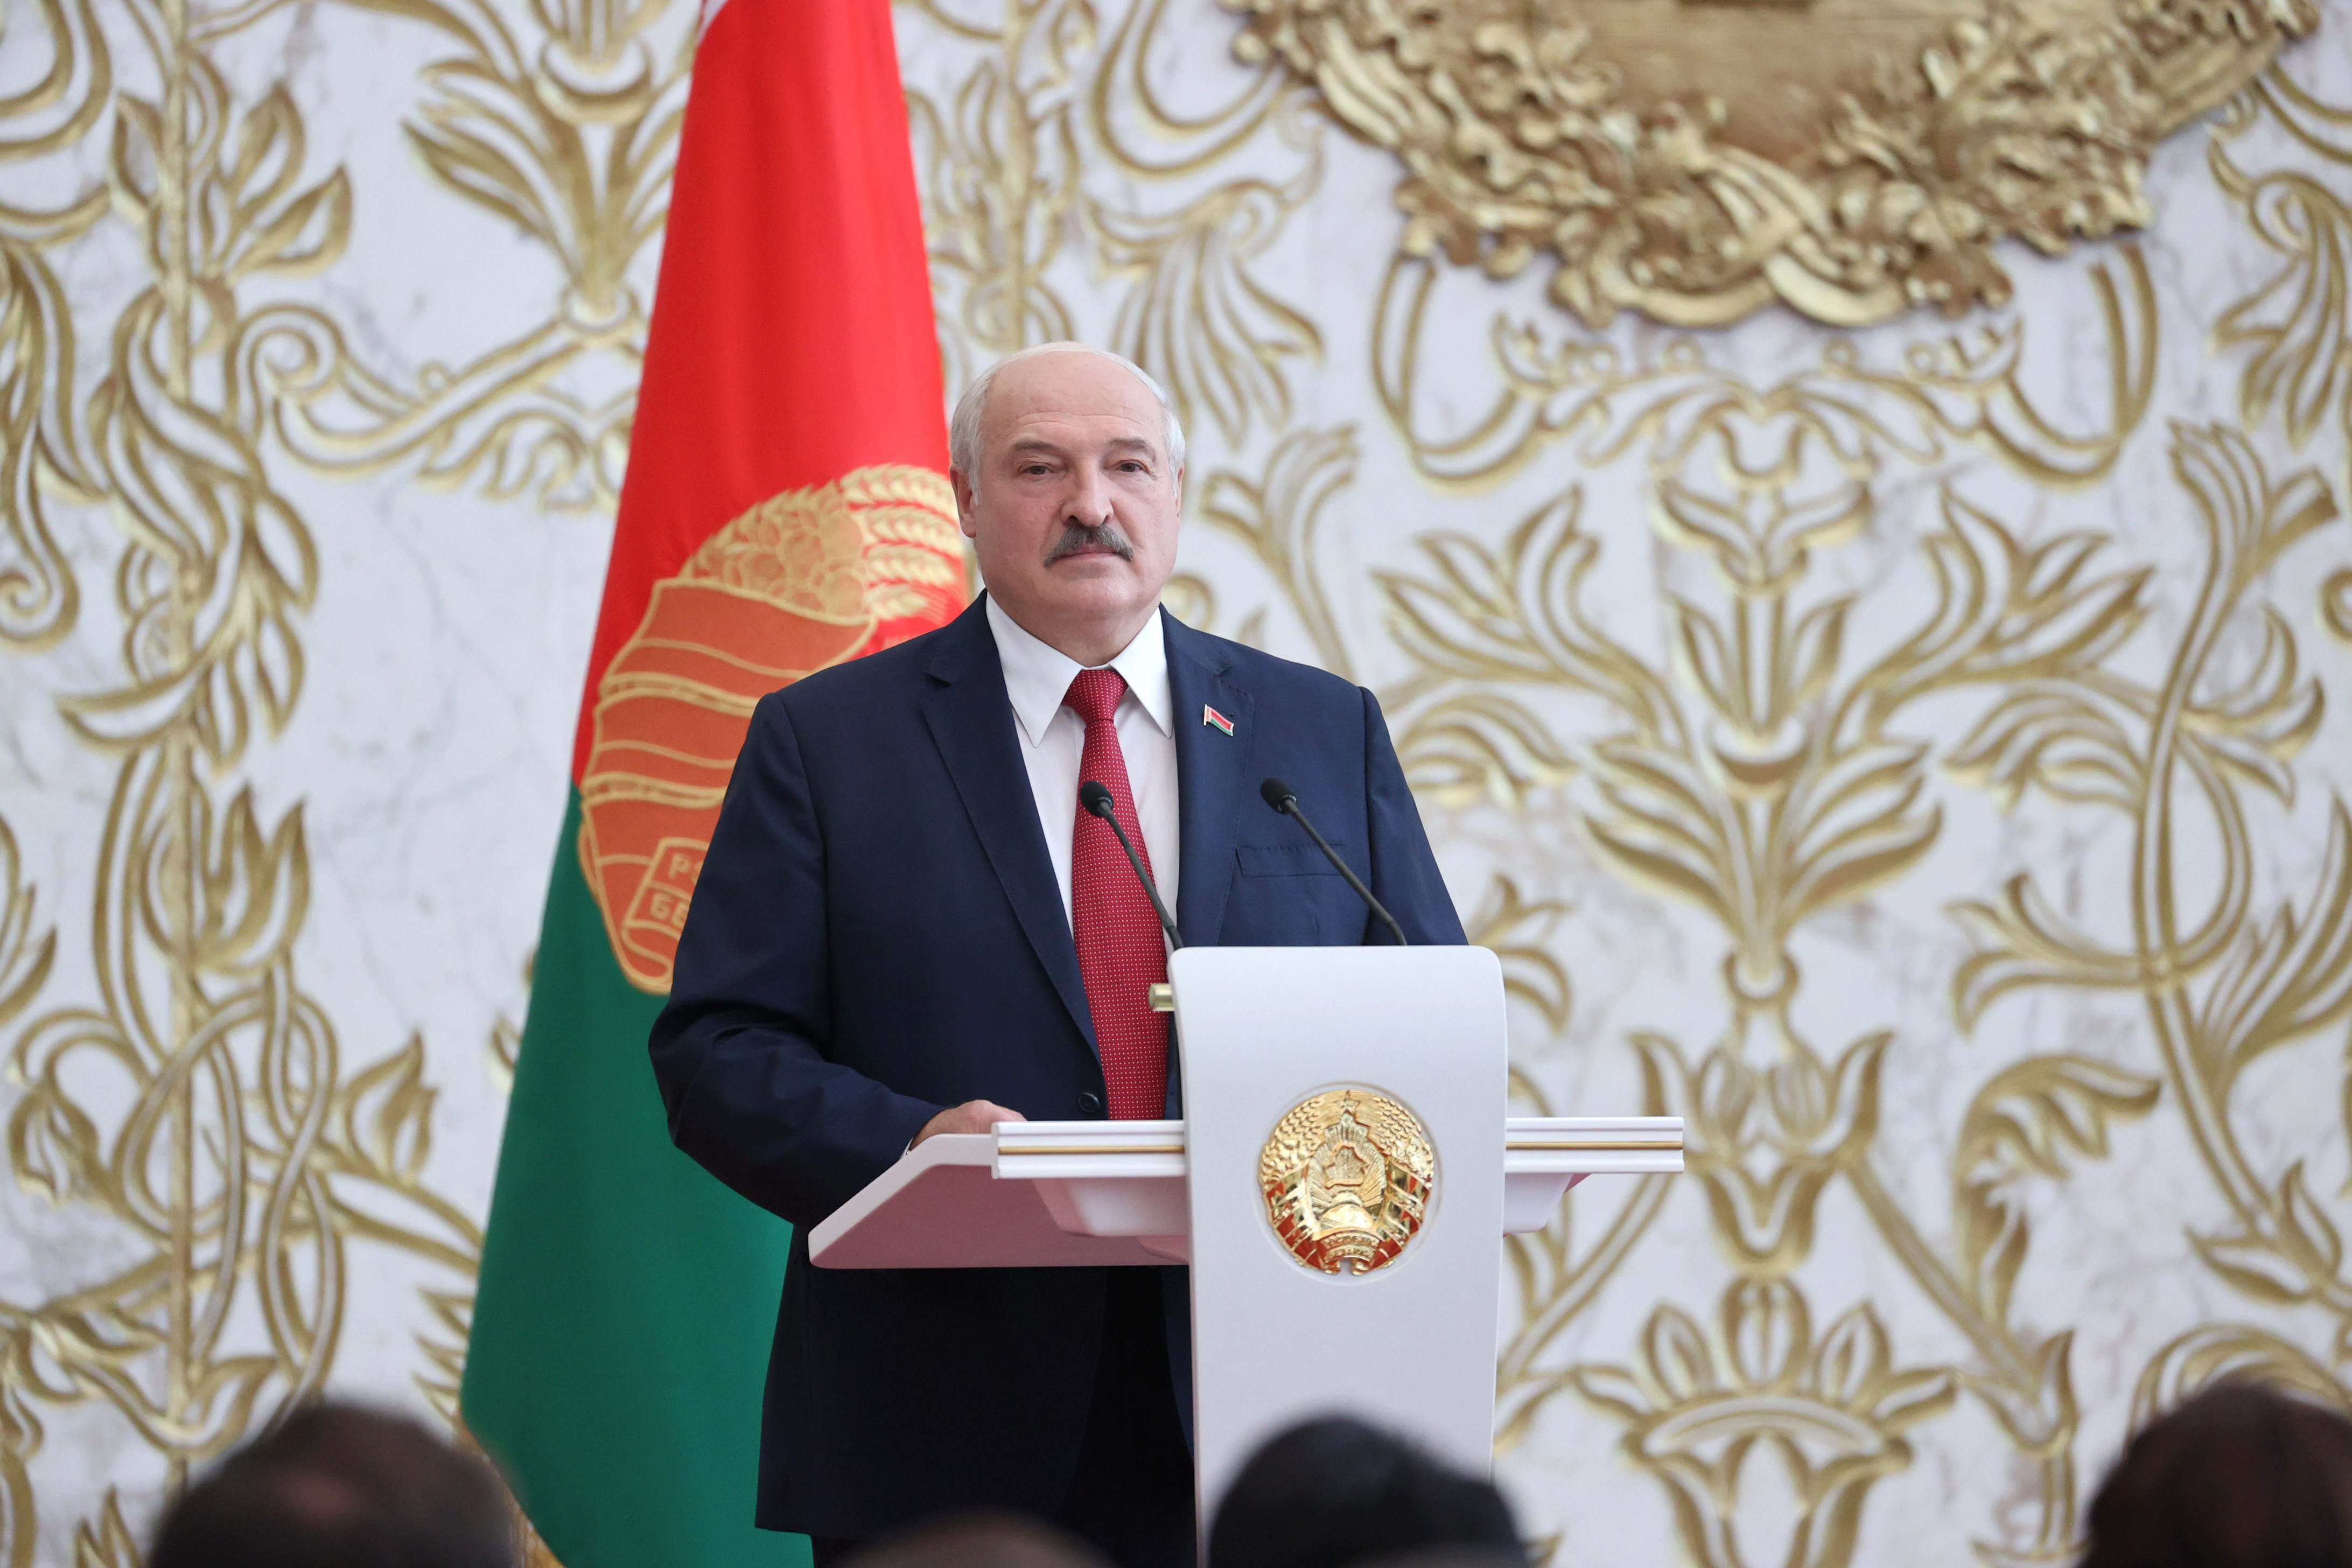  Лукашенко: У вас есть достойный и мощный бэкграунд современной белорусской нации 